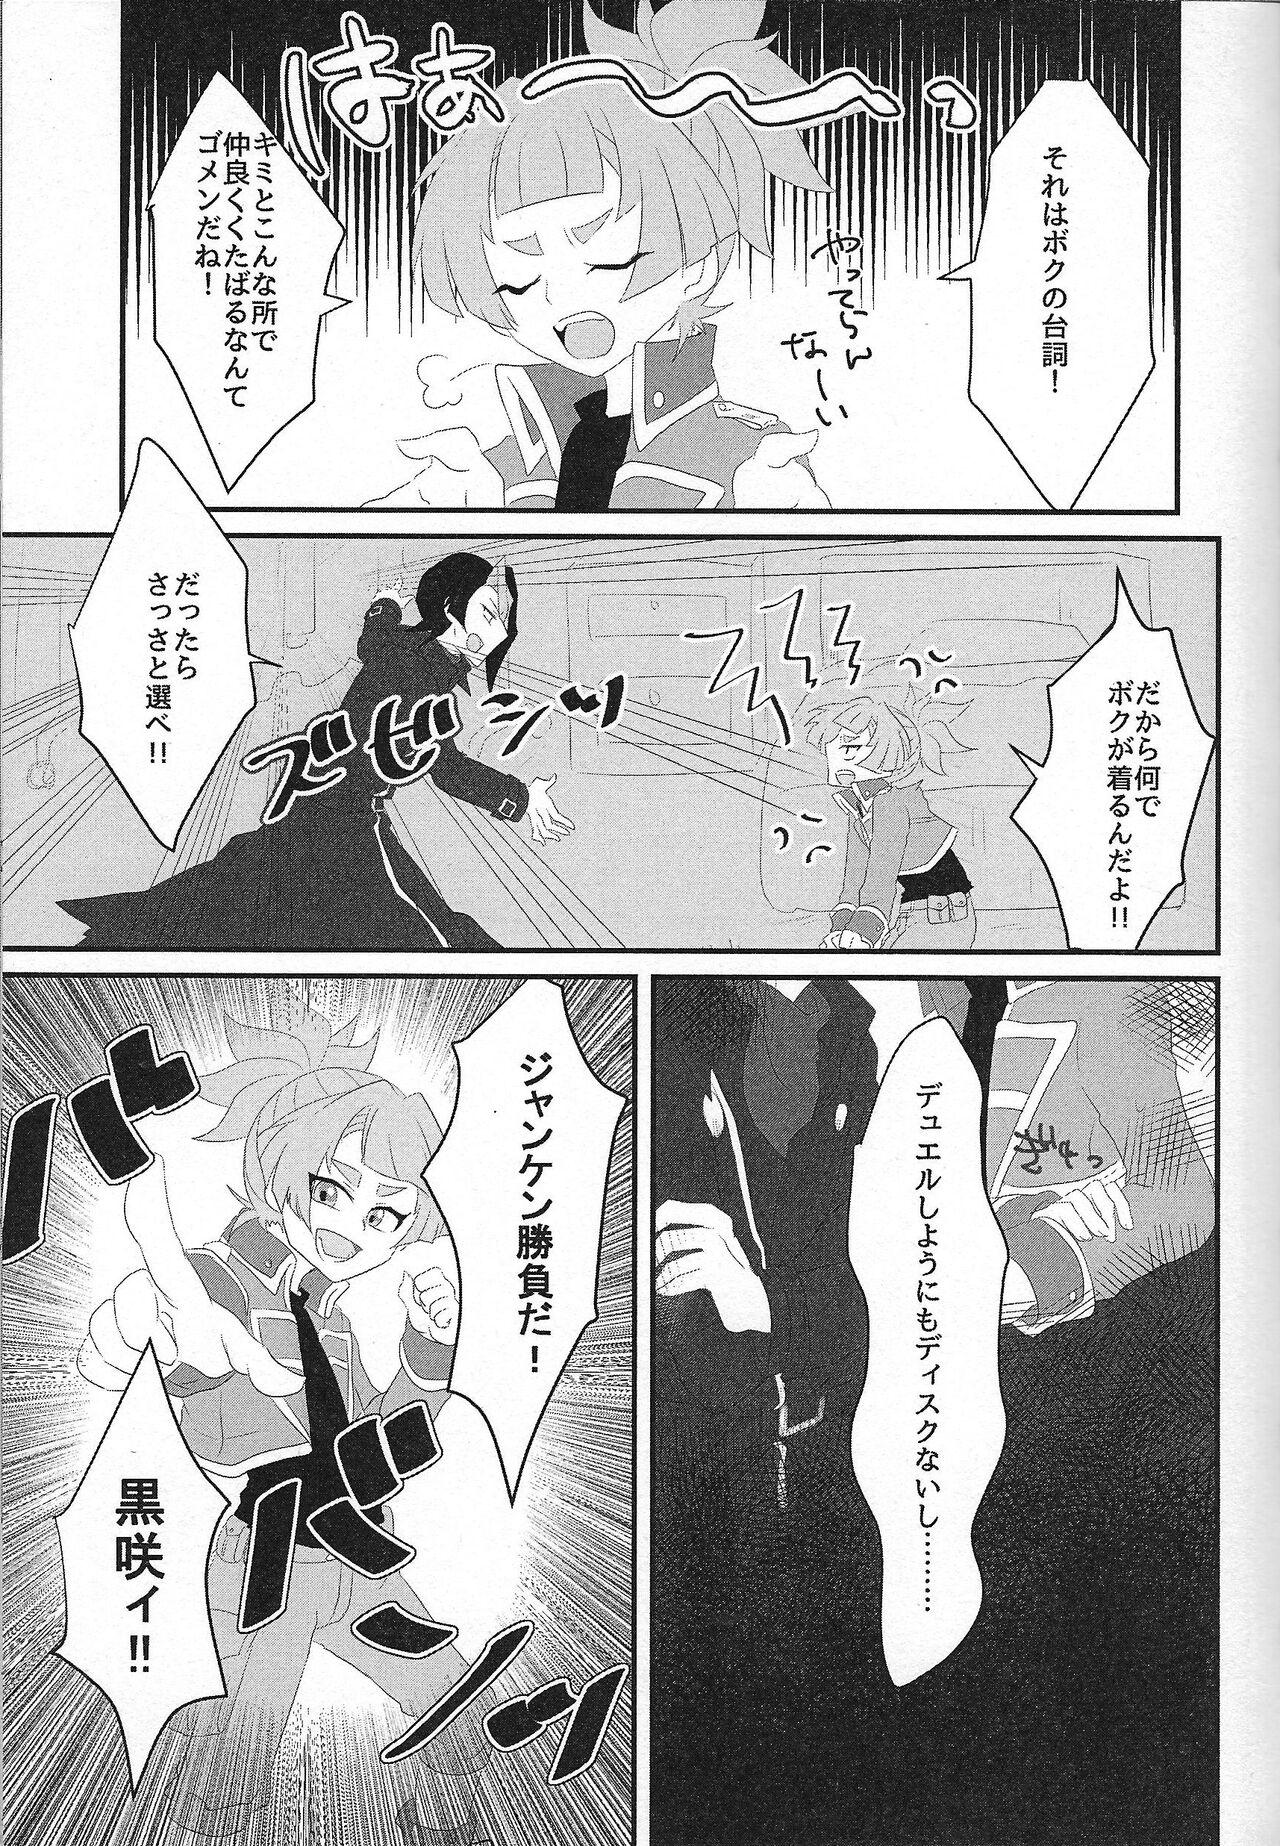 Bizarre Oniai desu ne Makeinu-san! - Yu gi oh arc v Animation - Page 5